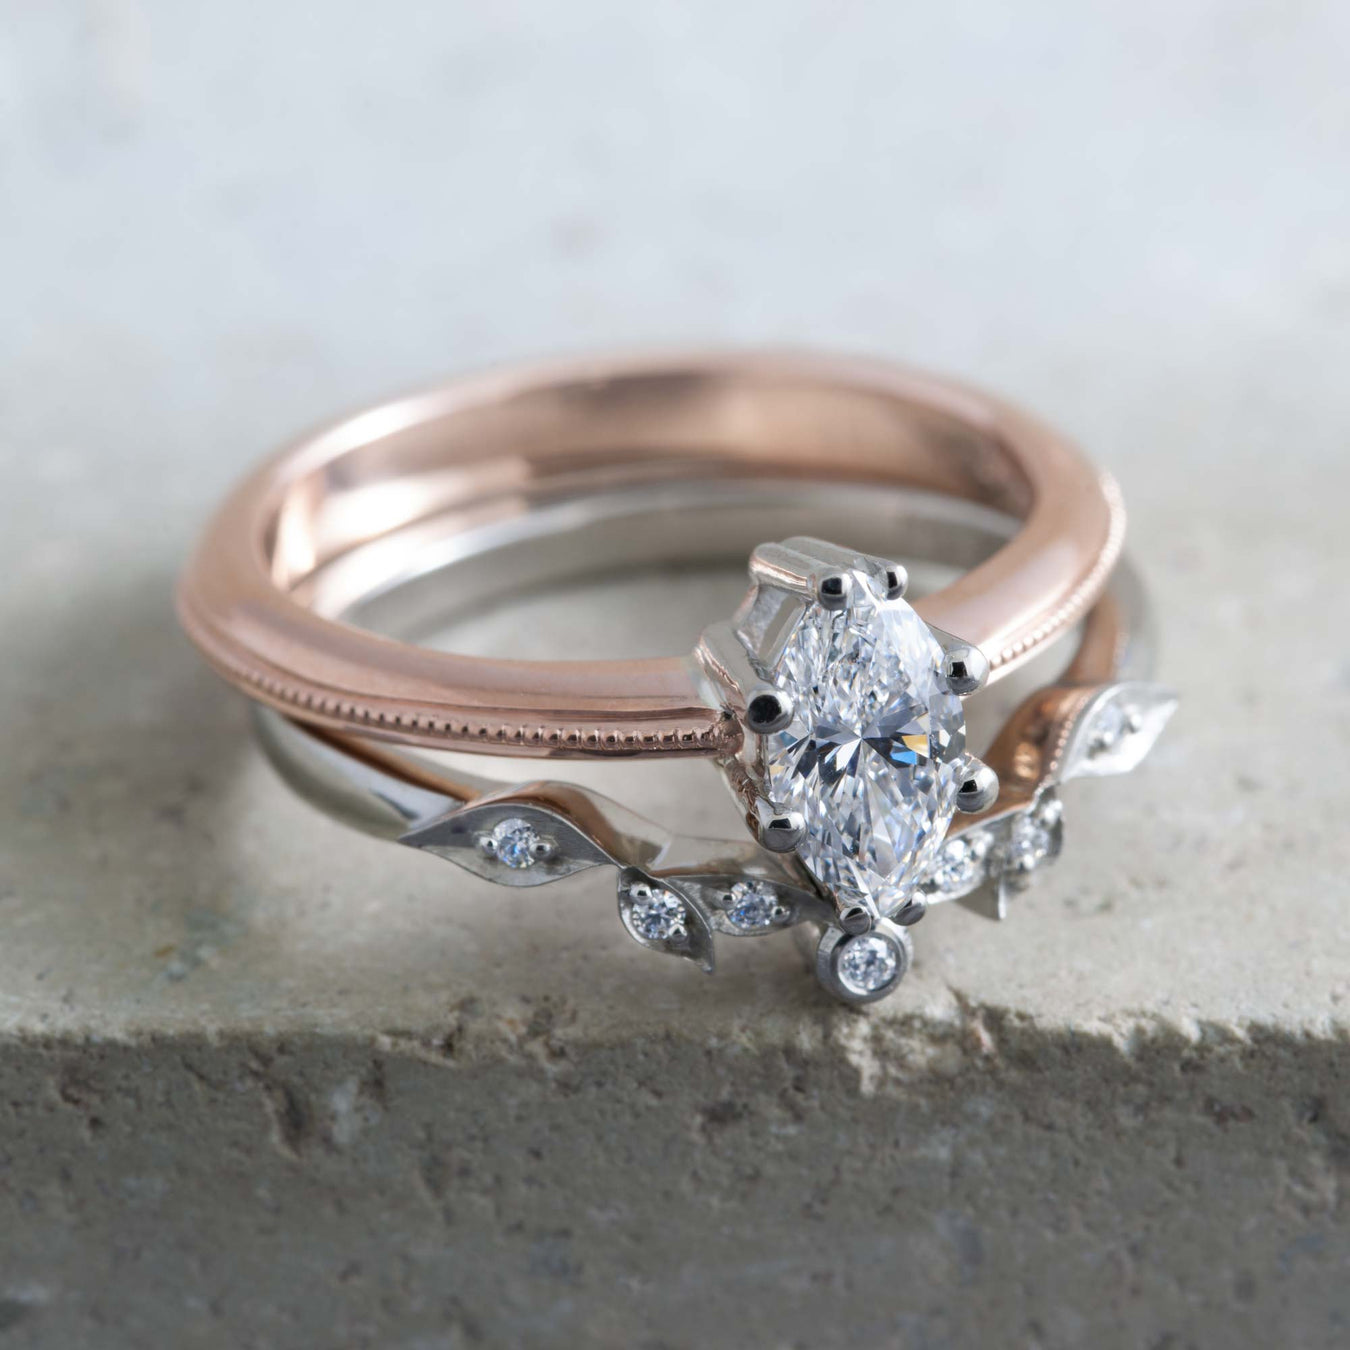 Unique Engagement Wedding Rings | Era Design Vancouver Canada